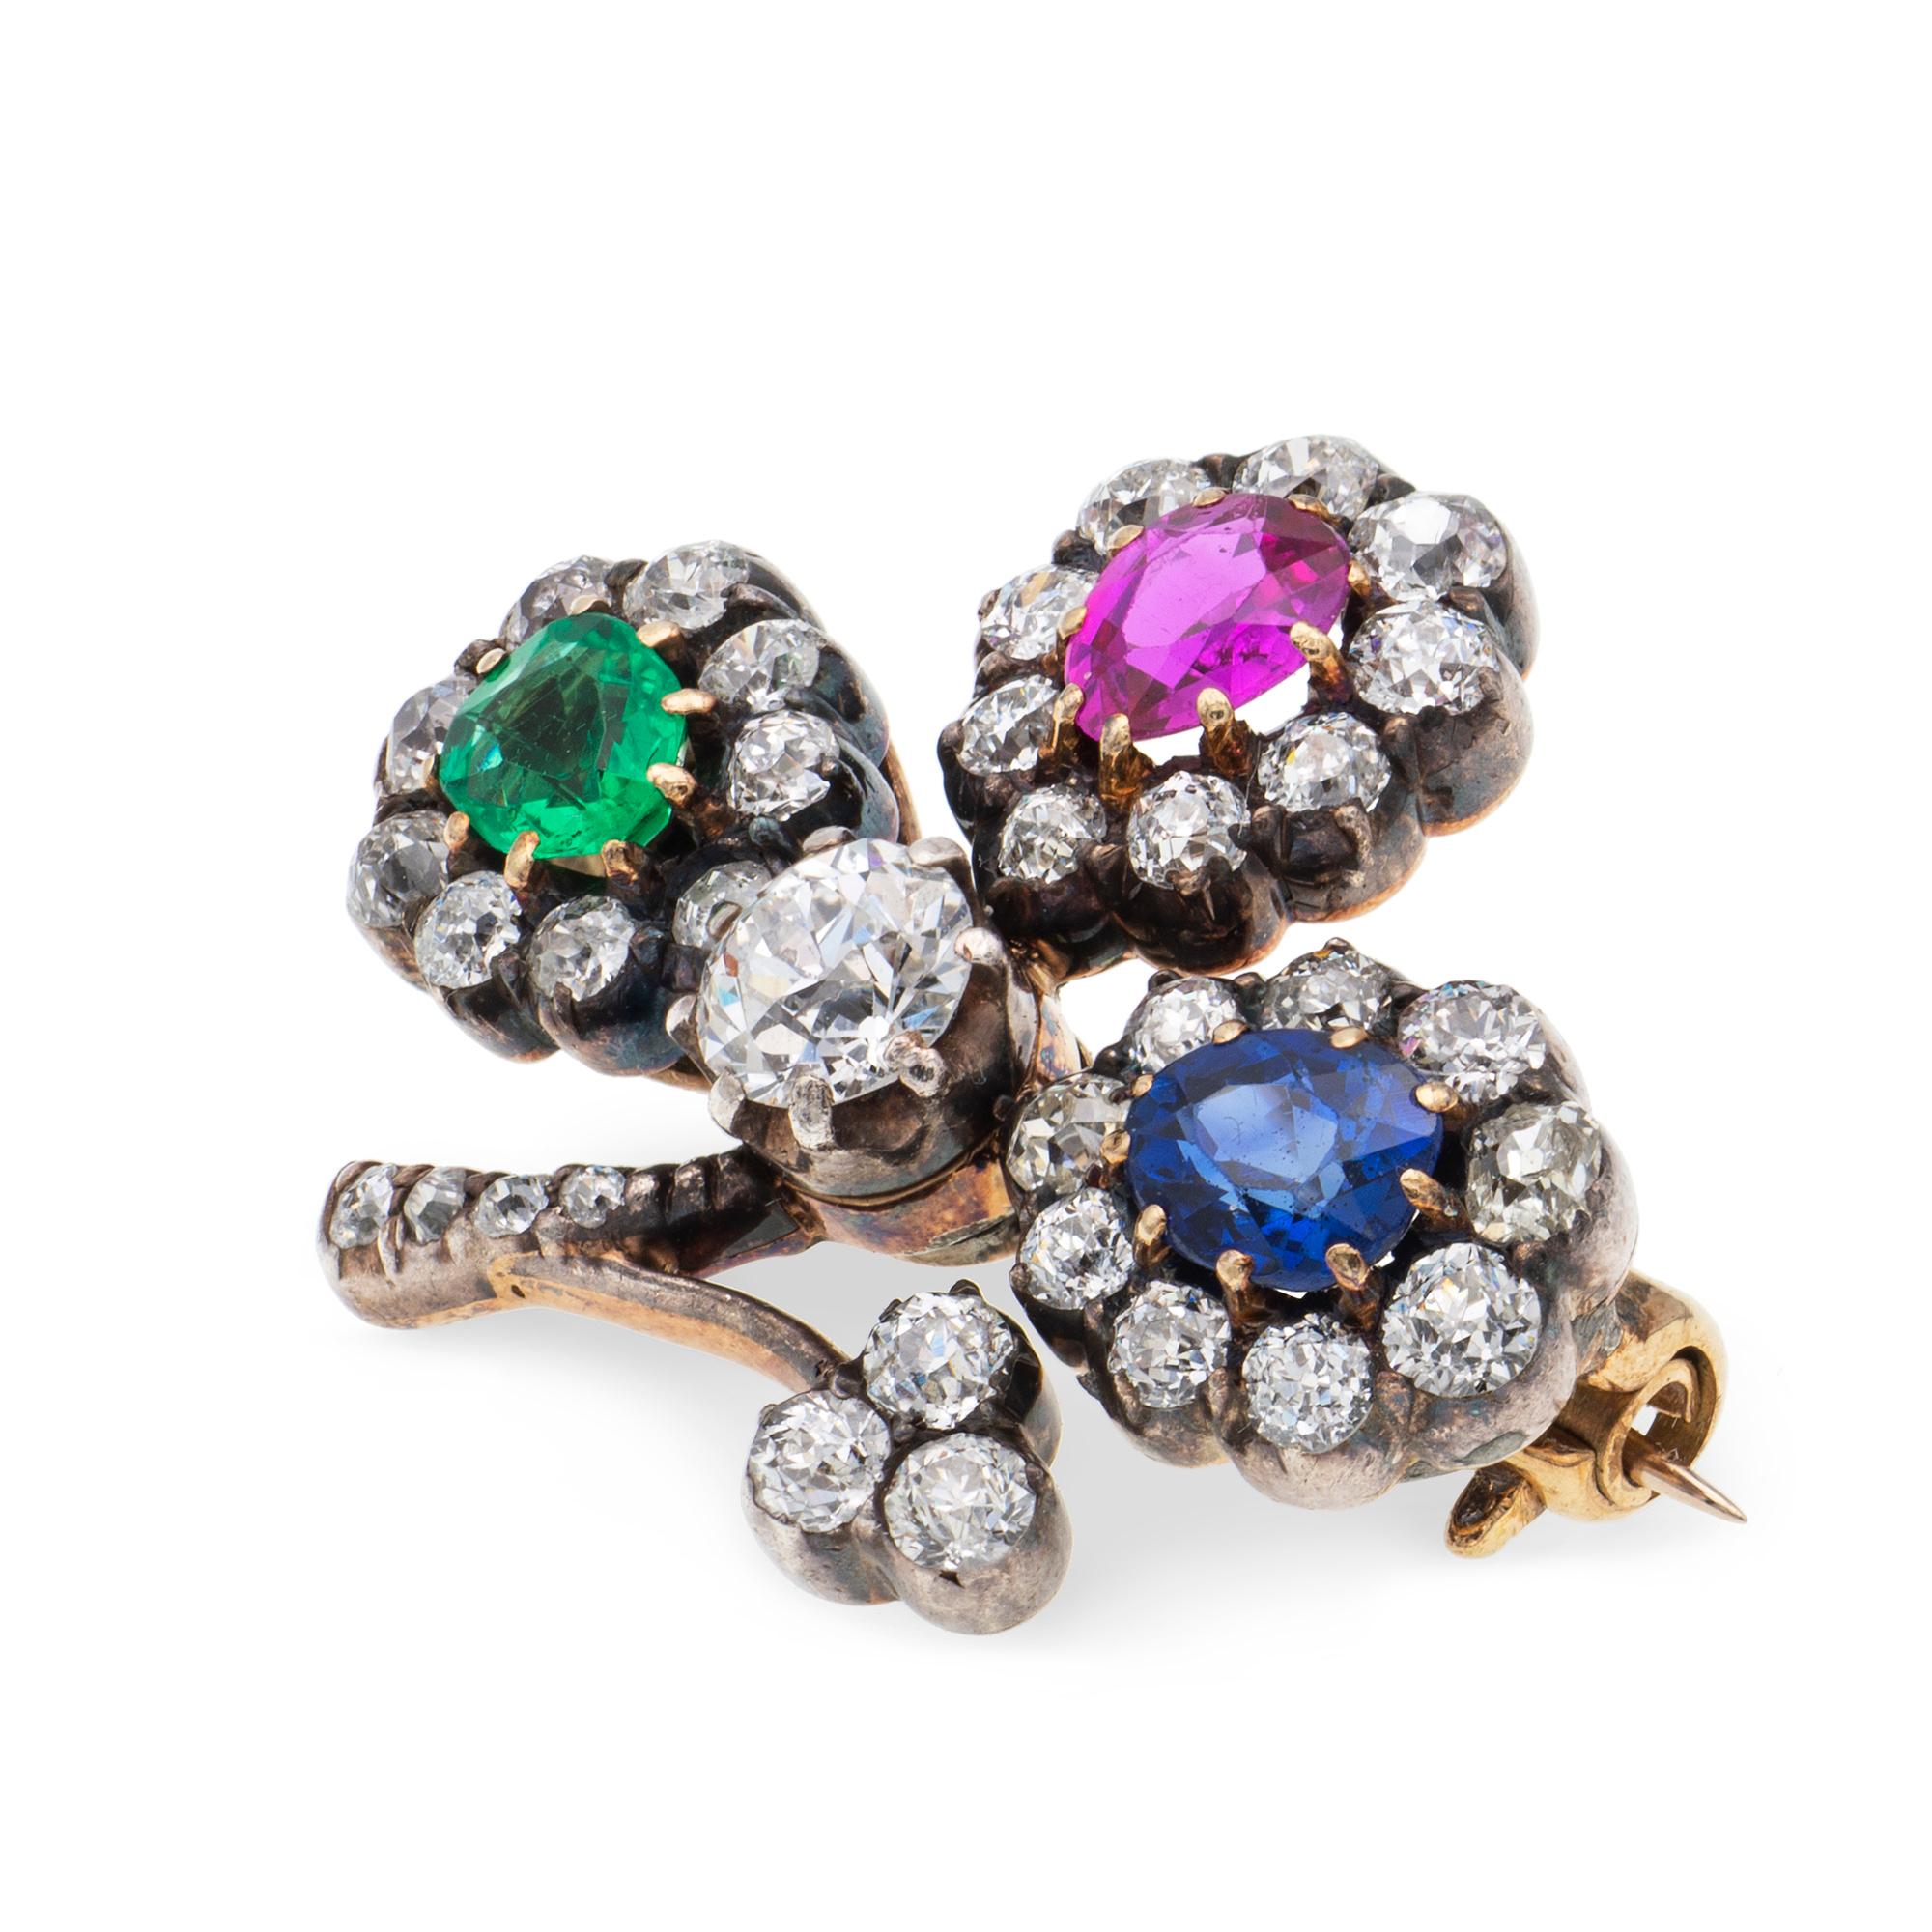 Eine viktorianische Kleeblatt-Brosche mit mehrfarbigen Edelsteinen und Diamanten, die drei Blätter sind jeweils mit einem birnenförmigen Stein, einem Smaragd, einem Rubin und einem Saphir besetzt, jedes umgeben von neun Diamanten im alten